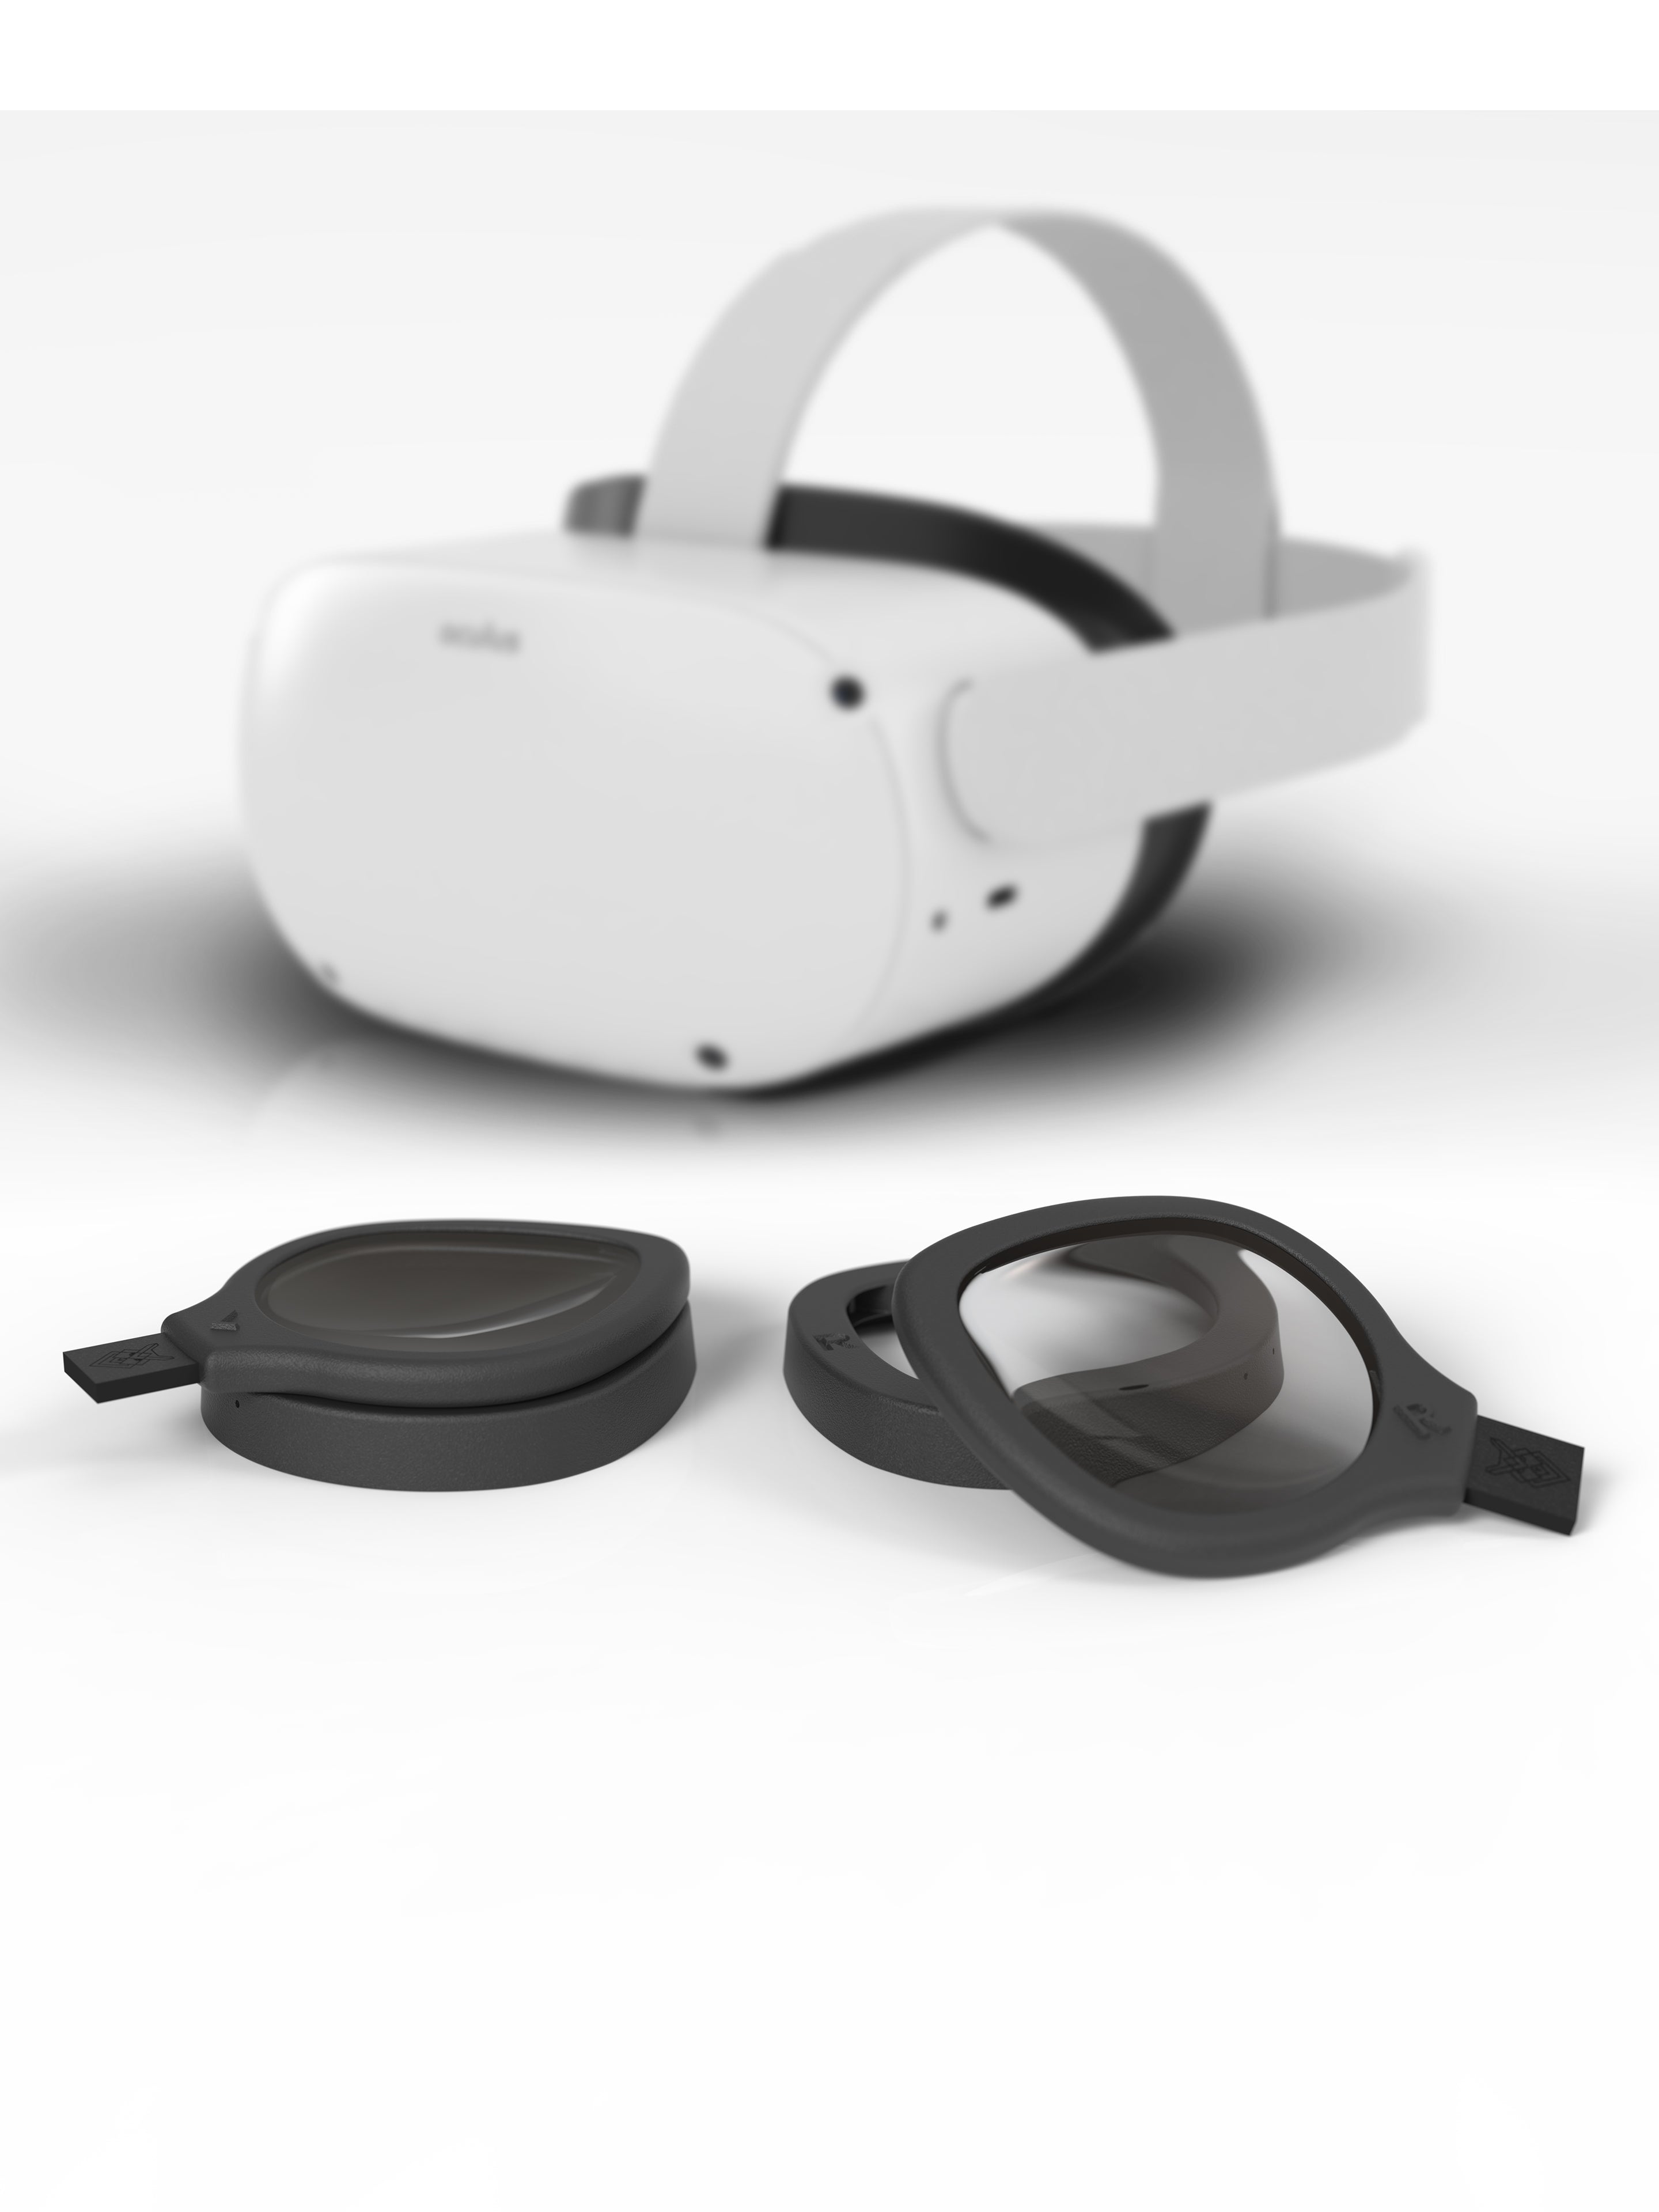 Reloptix Oculus/Meta Quest 1, Rift S, Go VR Prescription Lens Insert Kit